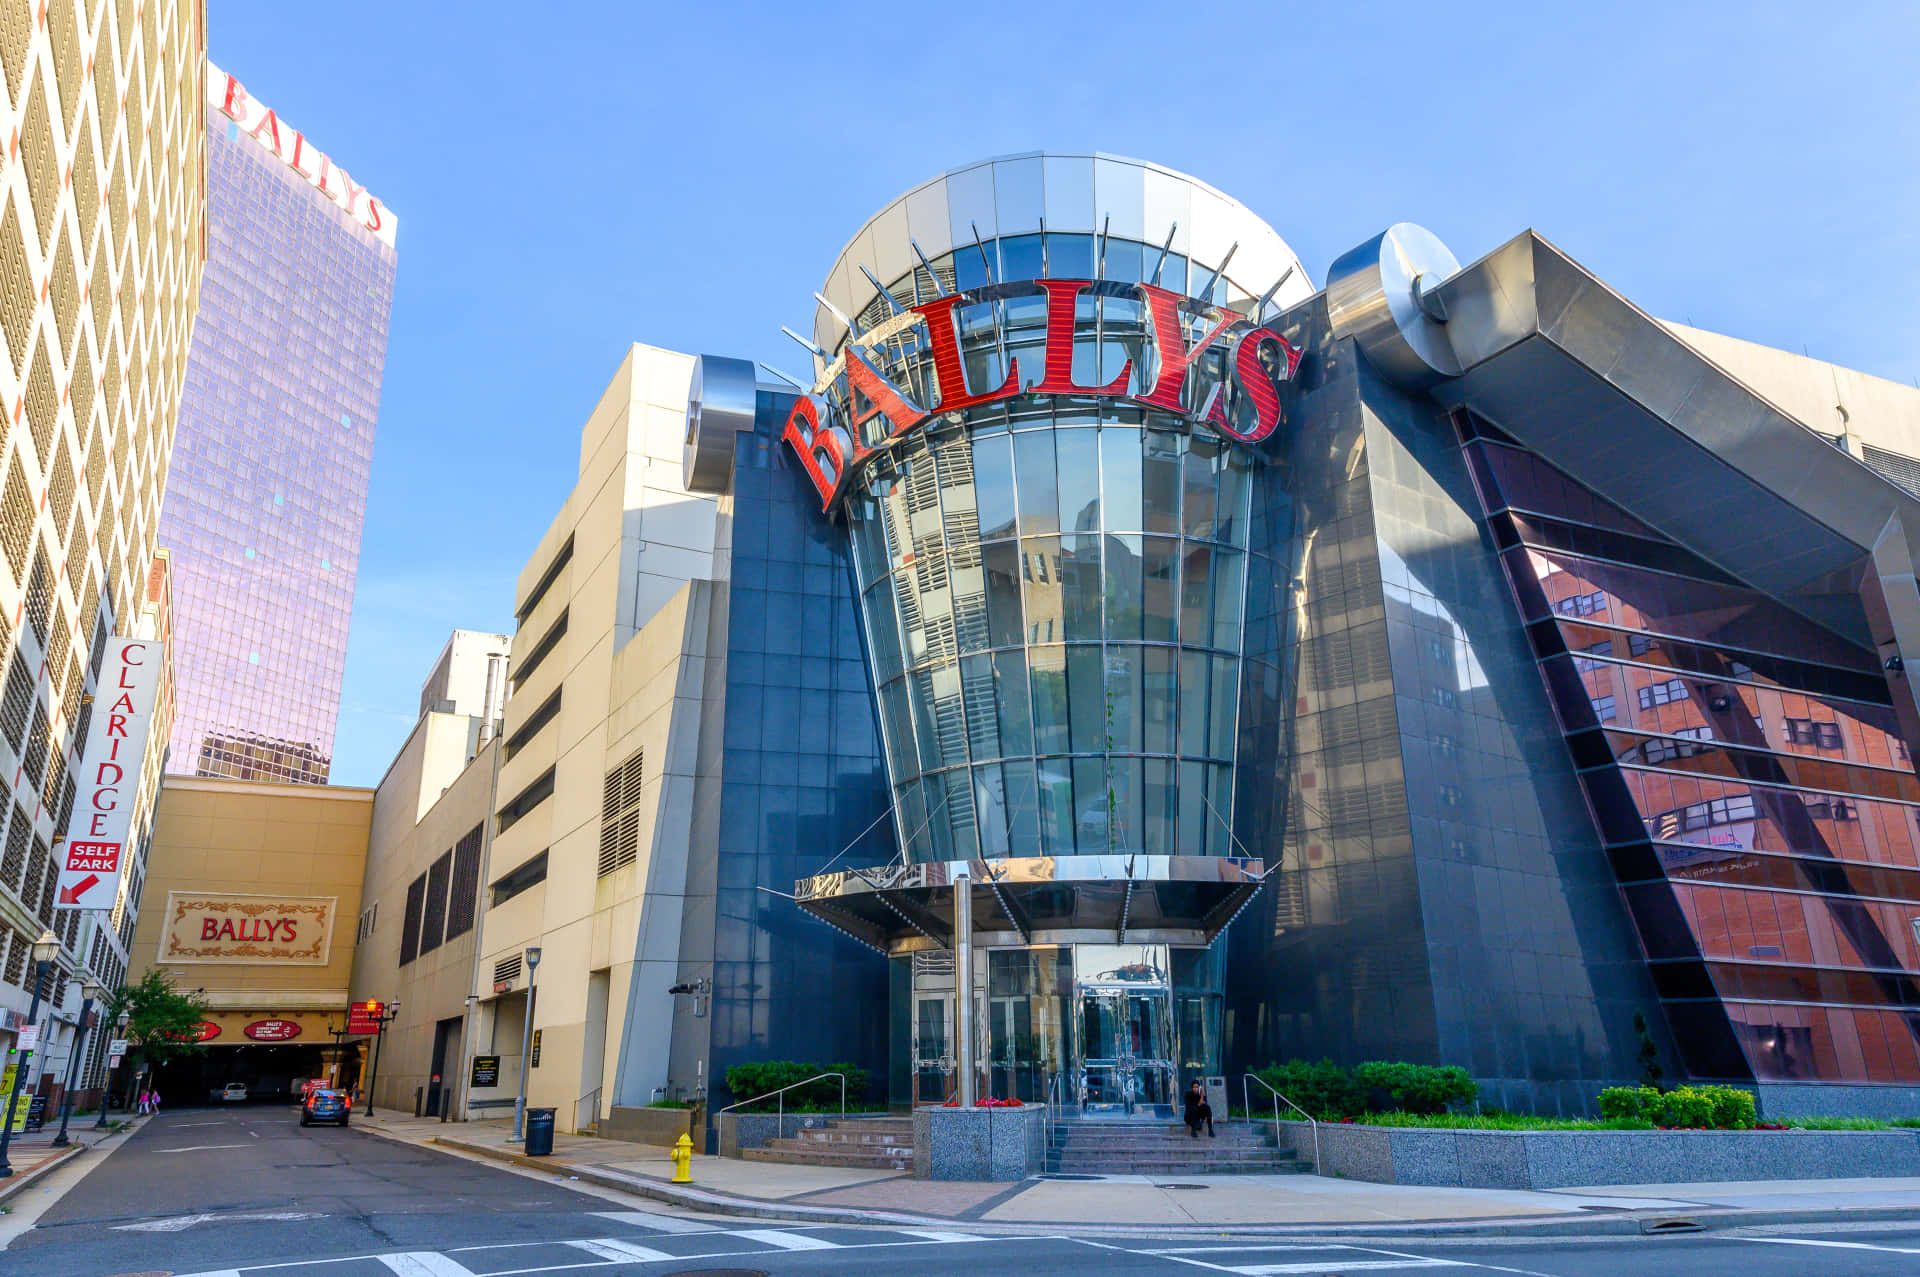 Imagendel Hotel Y Casino Bally's De Atlantic City